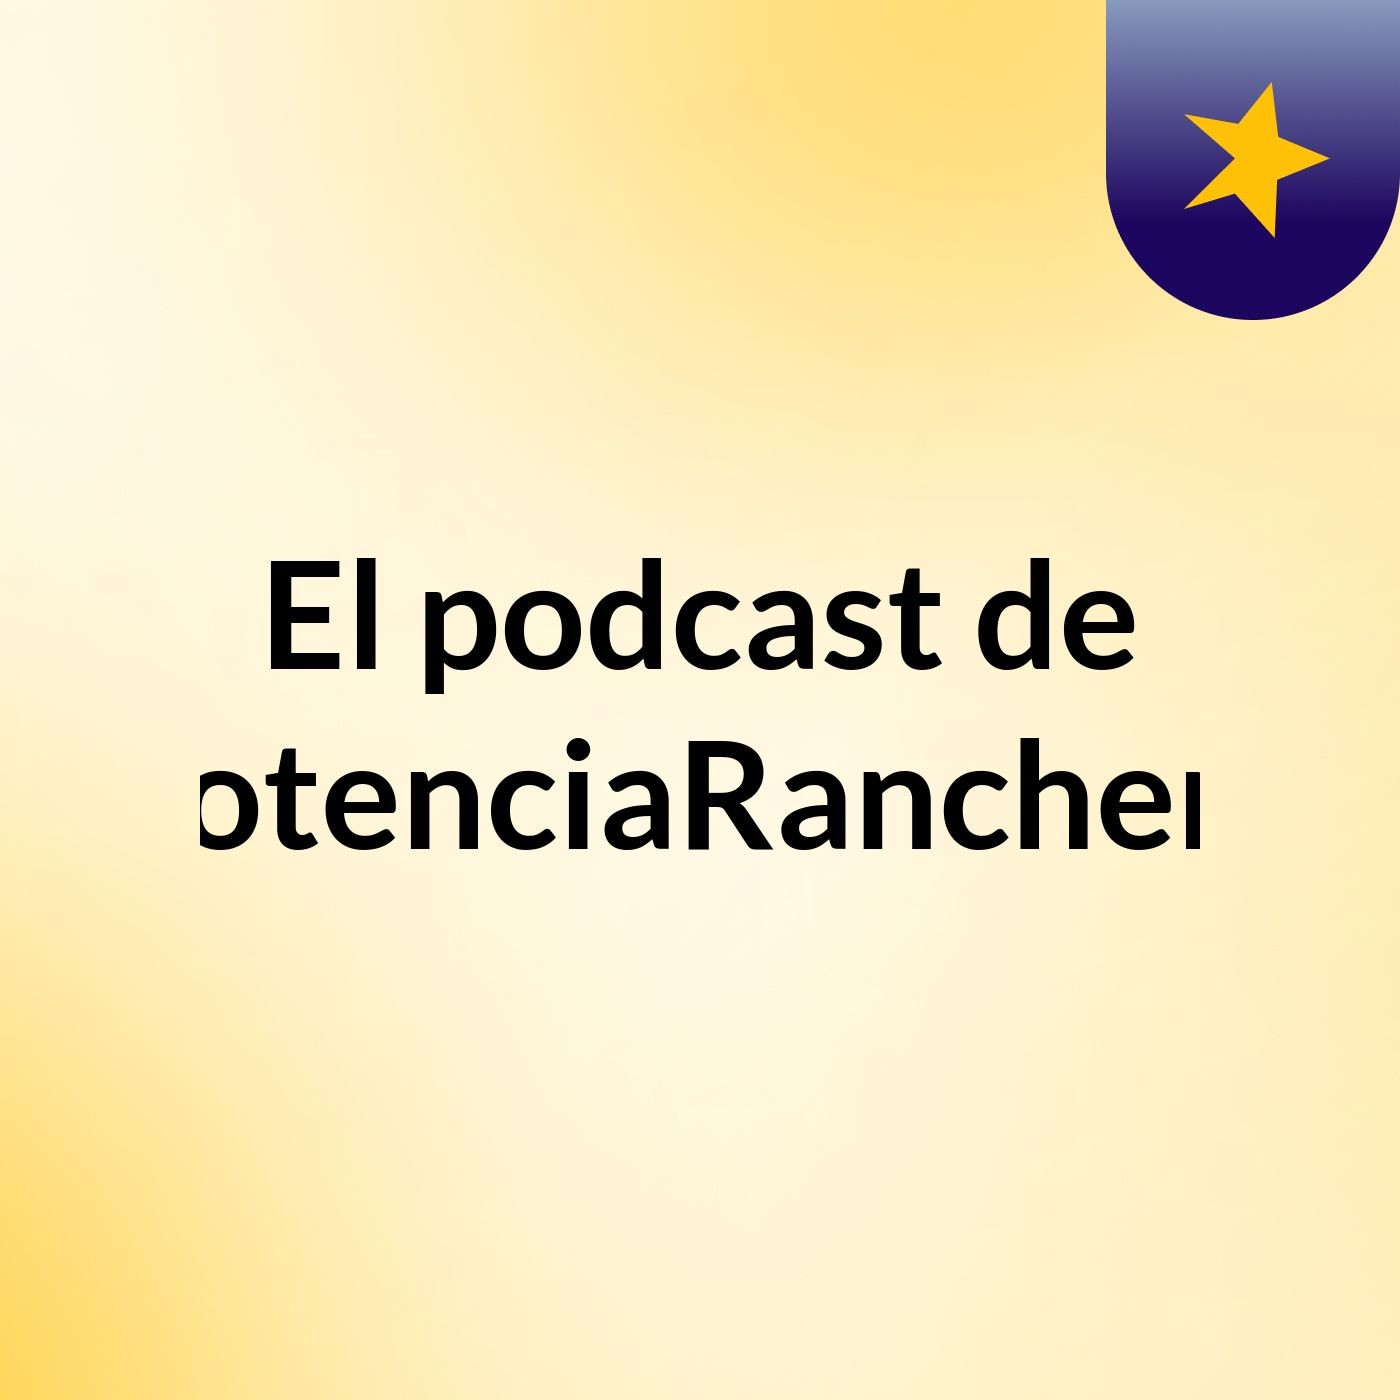 Episodio 3 - El podcast de PotenciaRanchera